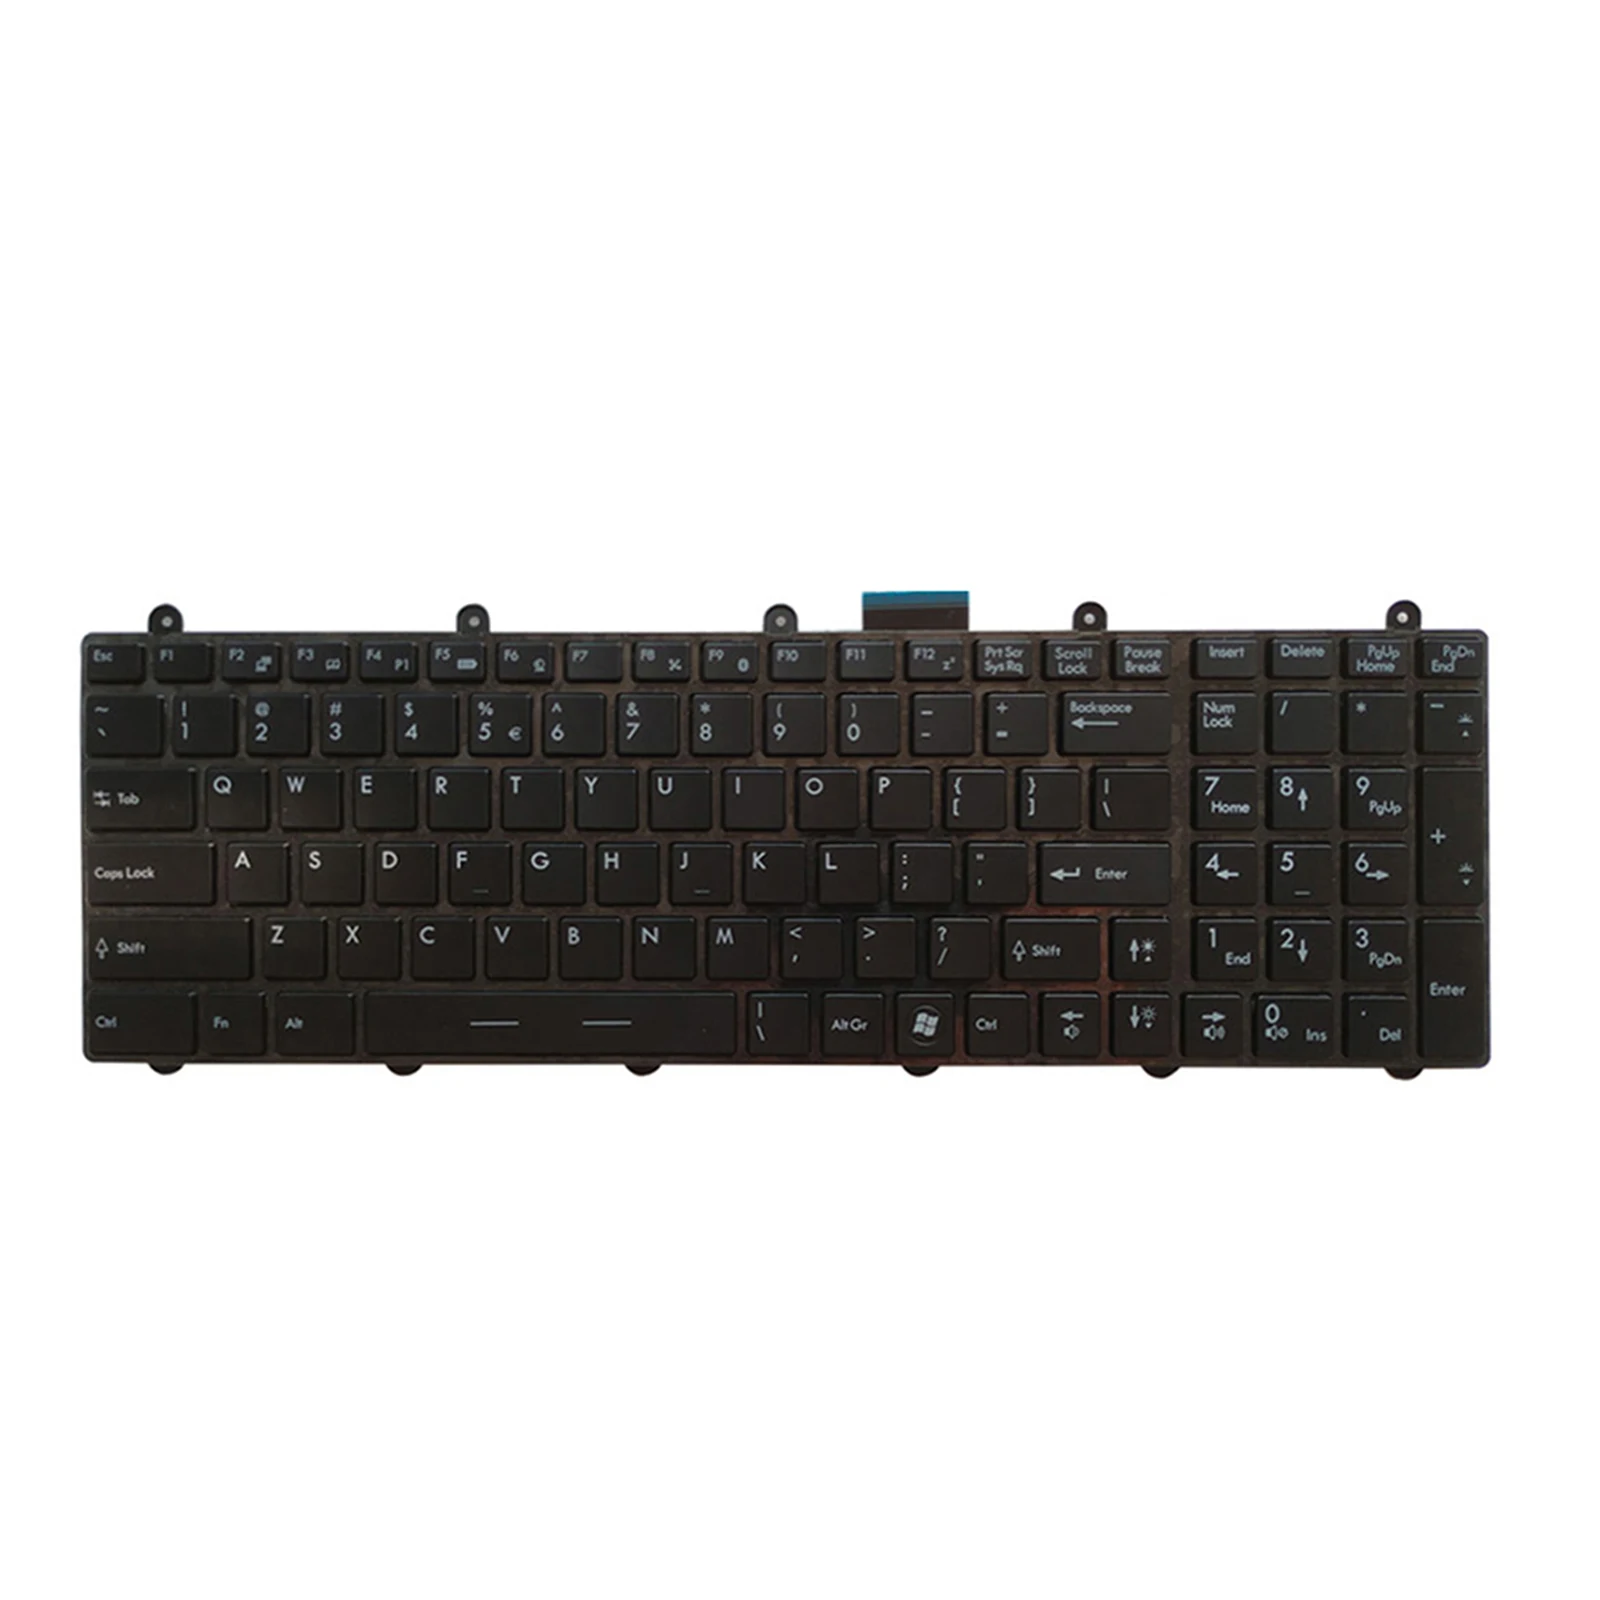 

Сменная Клавиатура для ноутбука MSI GT60 GT70 Series GX60 GX70 MS-16F3 Full RGB подсветка V139922AK1 аксессуары для ноутбука черного цвета